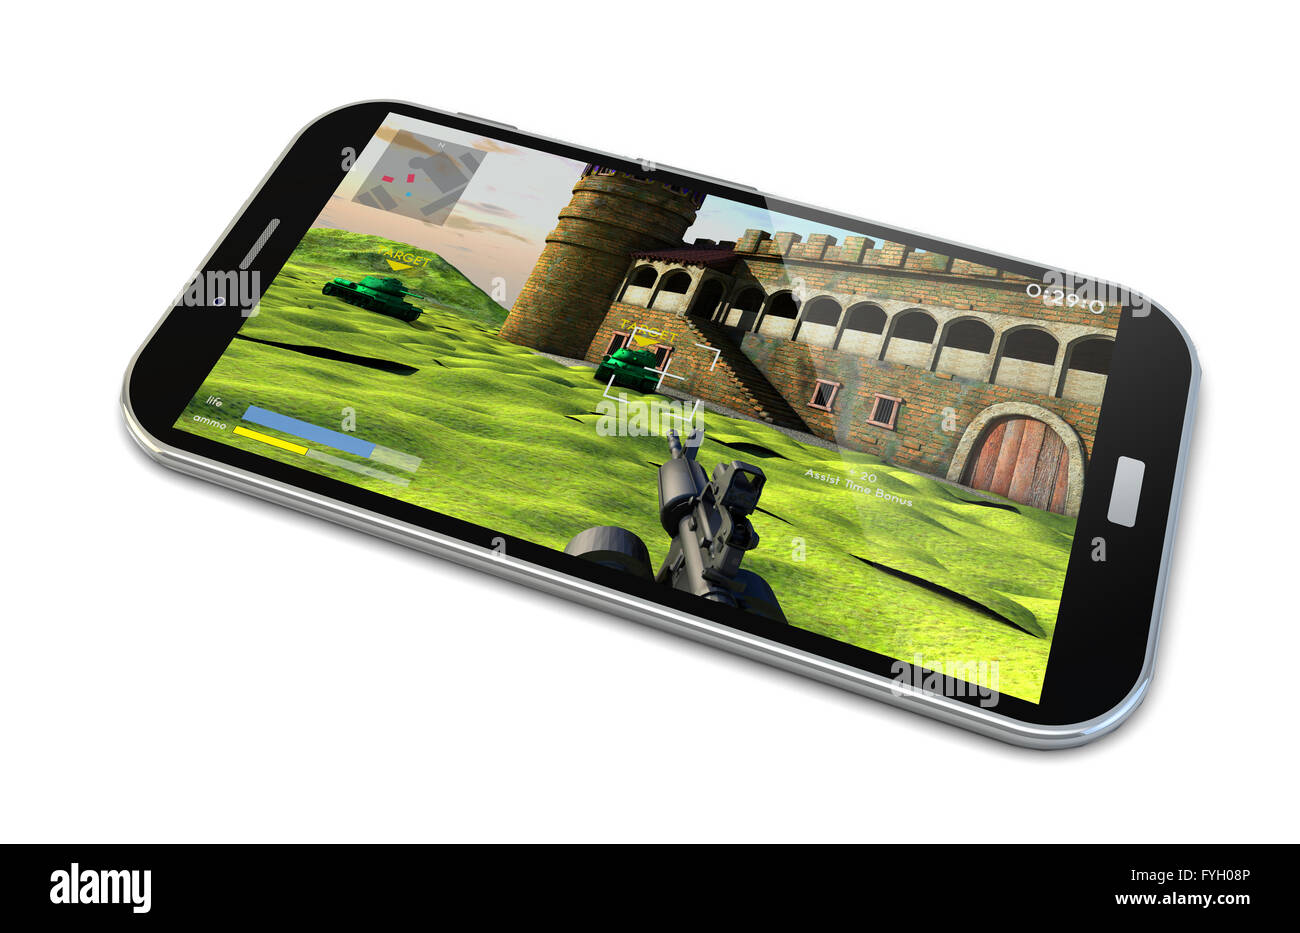 Eseguire il rendering di uno smartphone con un gioco sparatutto sullo schermo Foto Stock